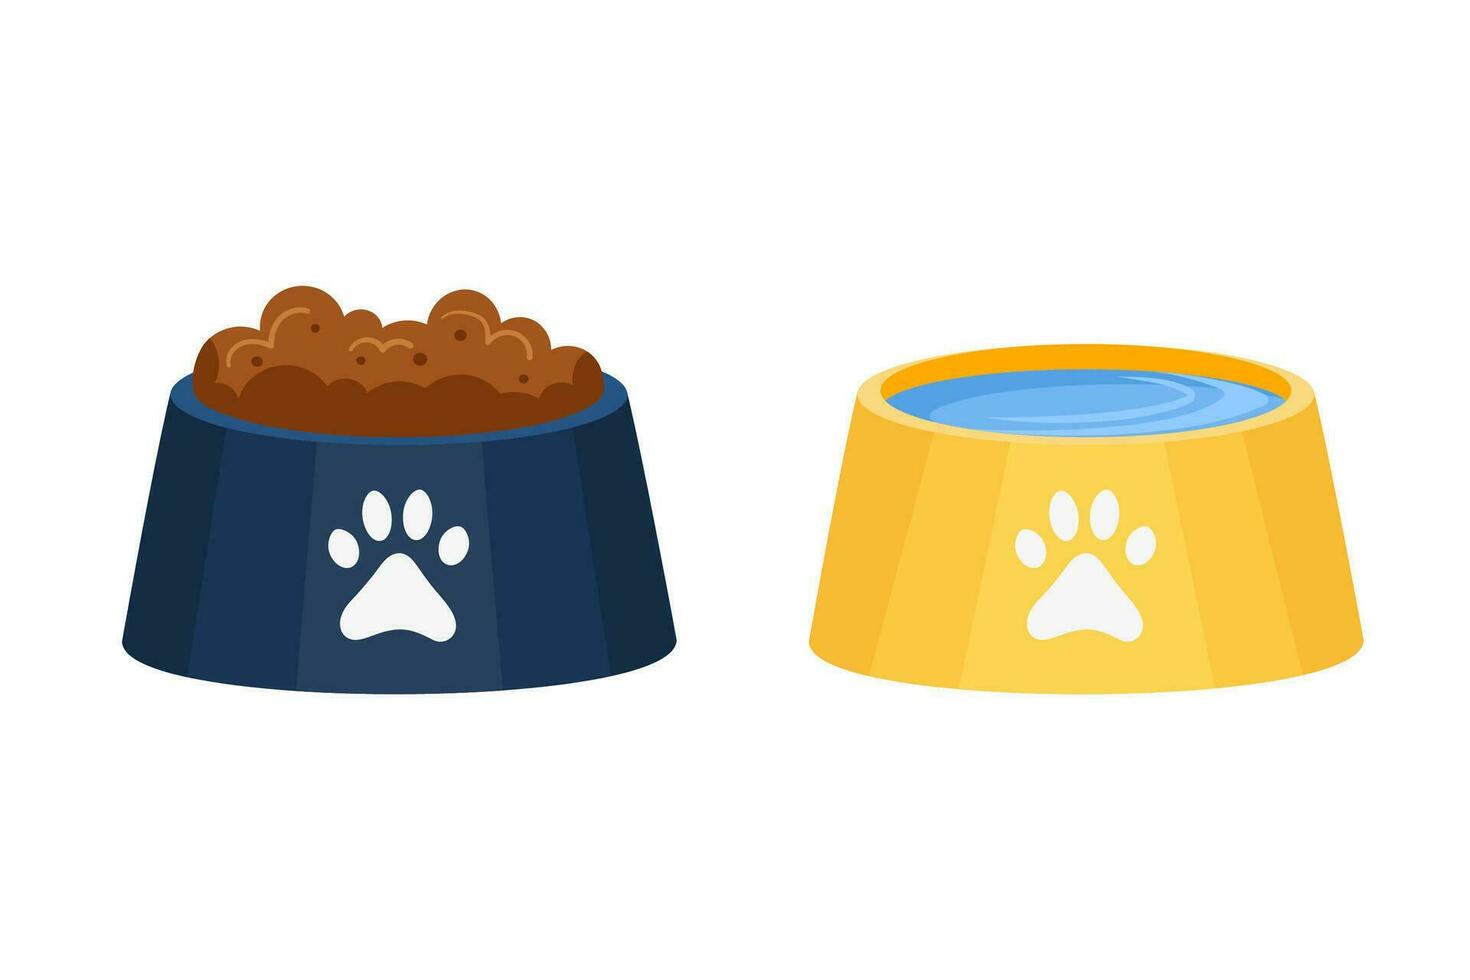 kommen met voedsel en water voor hond en kat. individu voeden kom en drankje. huisdier bord pictogrammen vlak tekenfilm vector illustratie